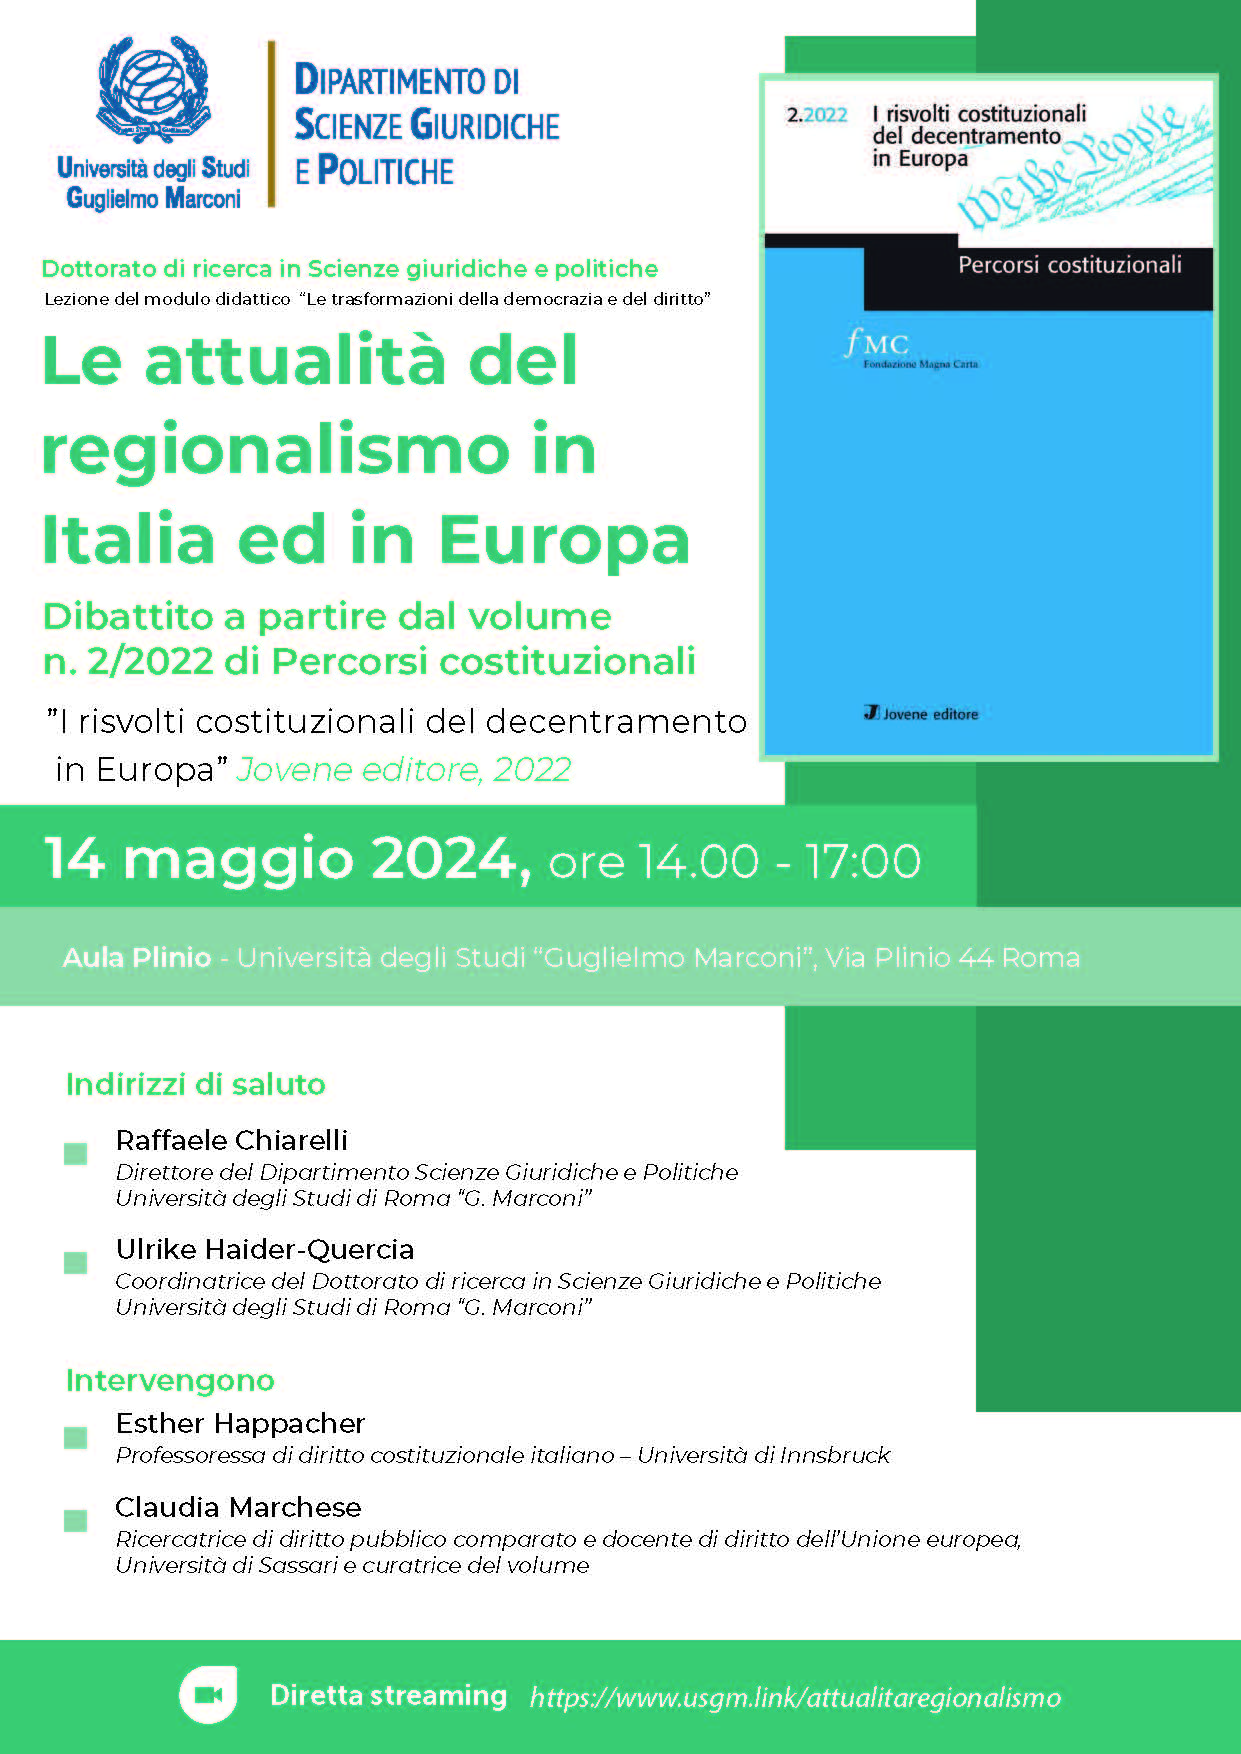 Dibattito a partire dal volume n. 2/2022 di Percorsi costituzionali - I risvolti costituzionali del decentramento in Europa”, Jovene